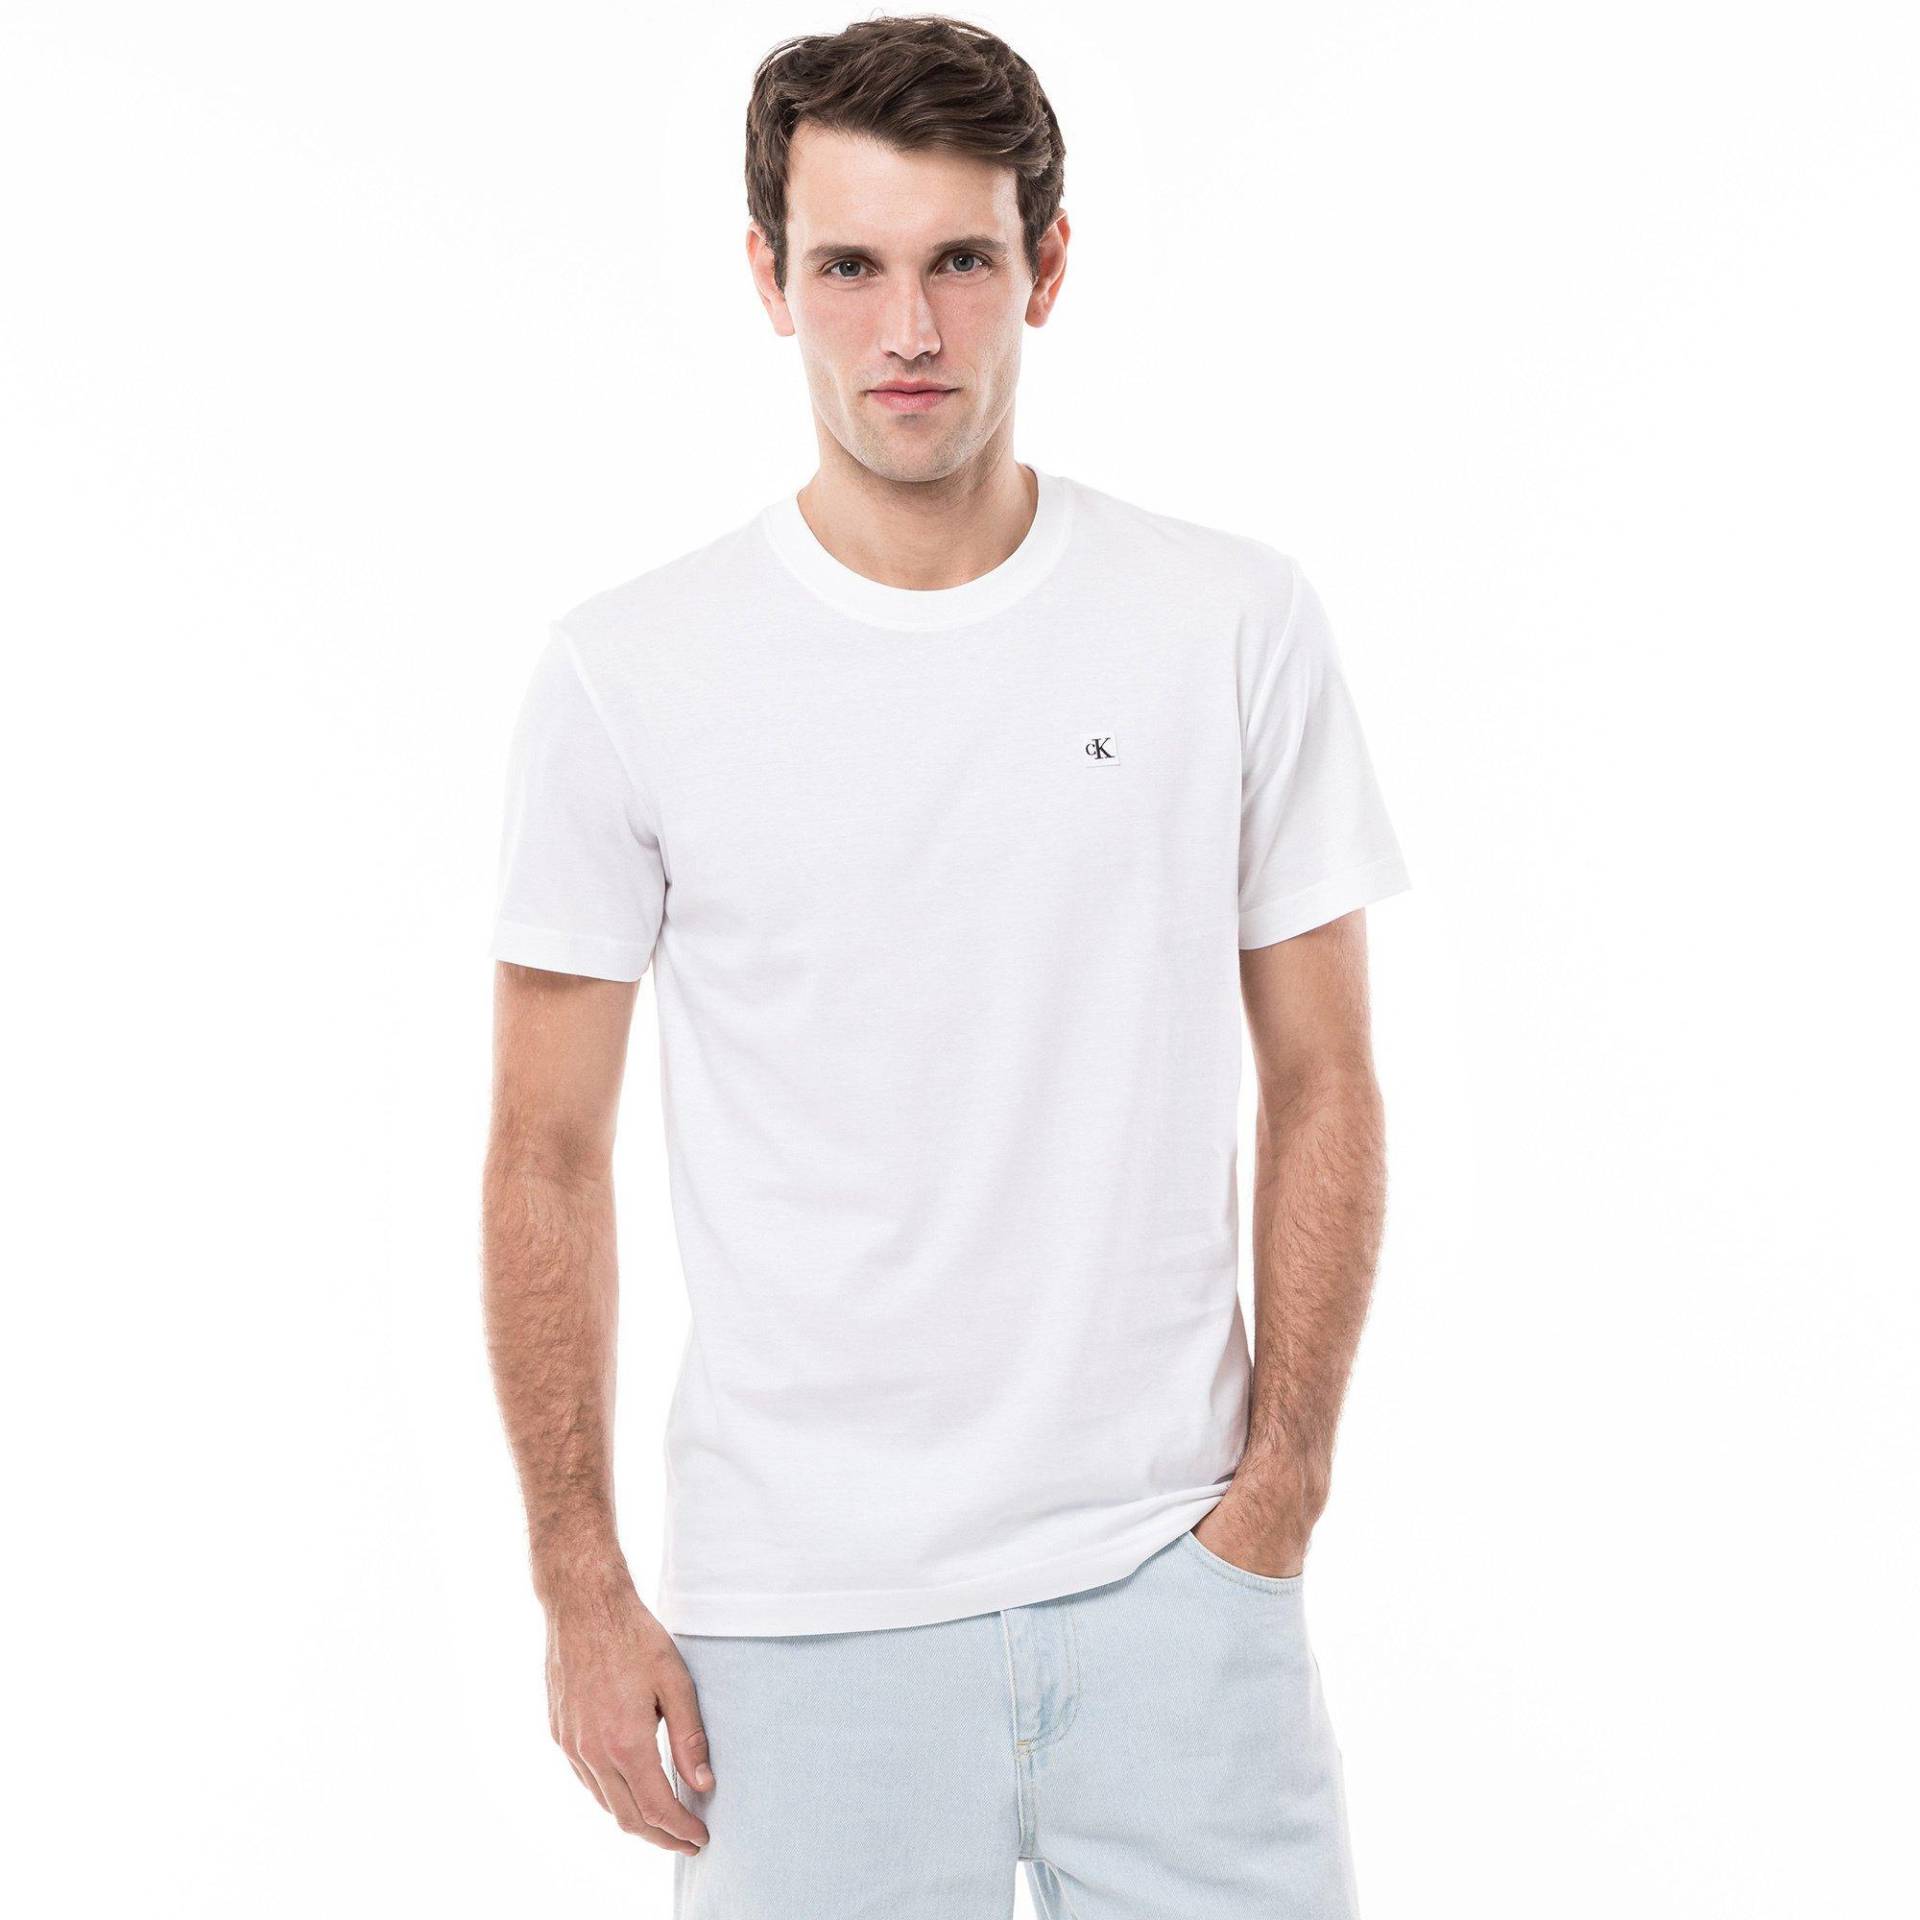 T-shirt Herren Weiss S von Calvin Klein Jeans